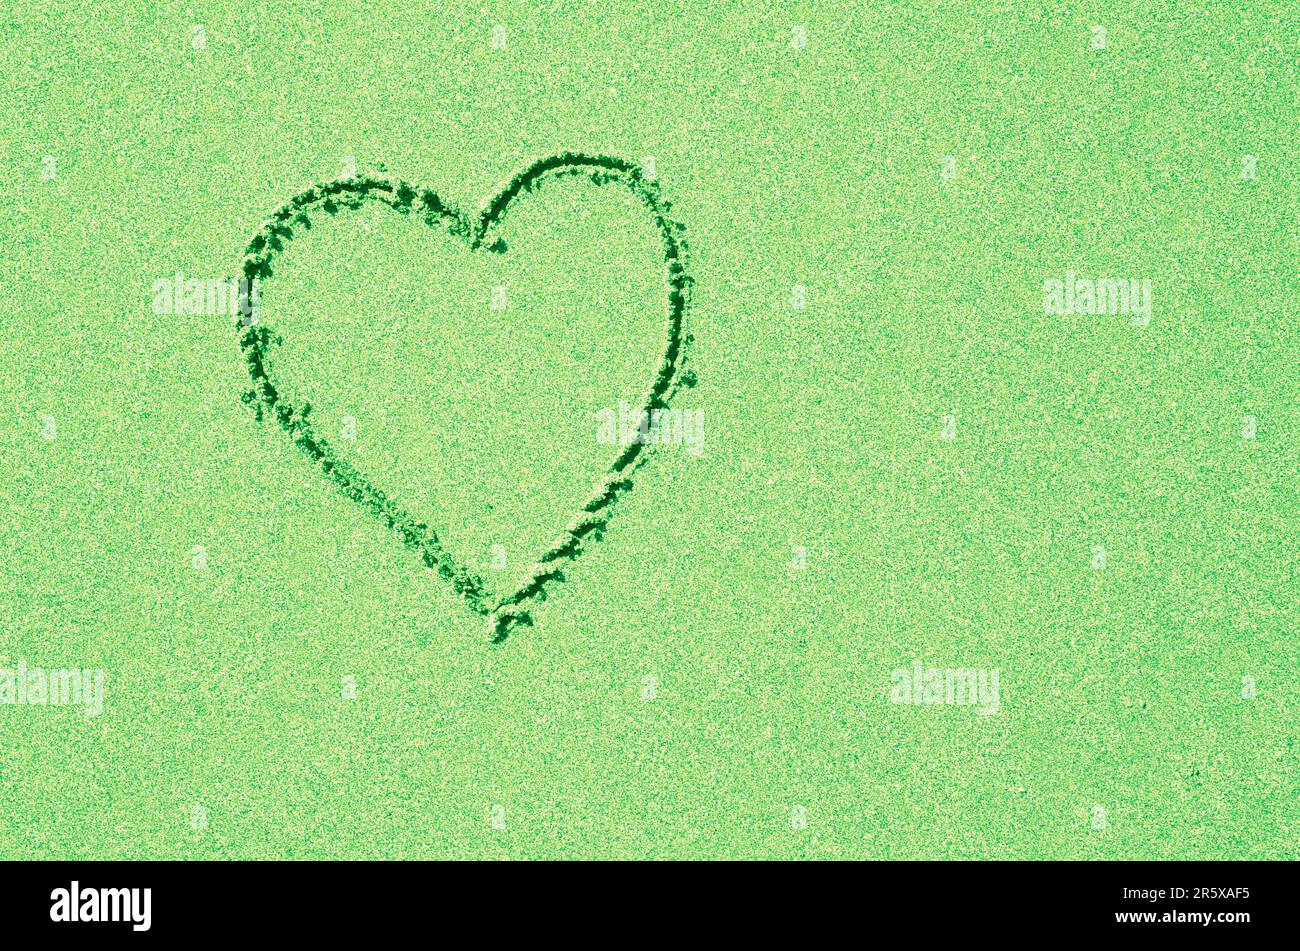 Coeur vert pastel dans le fond étincelant propre. Amour ou romance dans la couleur verte. Célébrez Pâques ou Saint Patrick's Day avec un message sincère. Banque D'Images